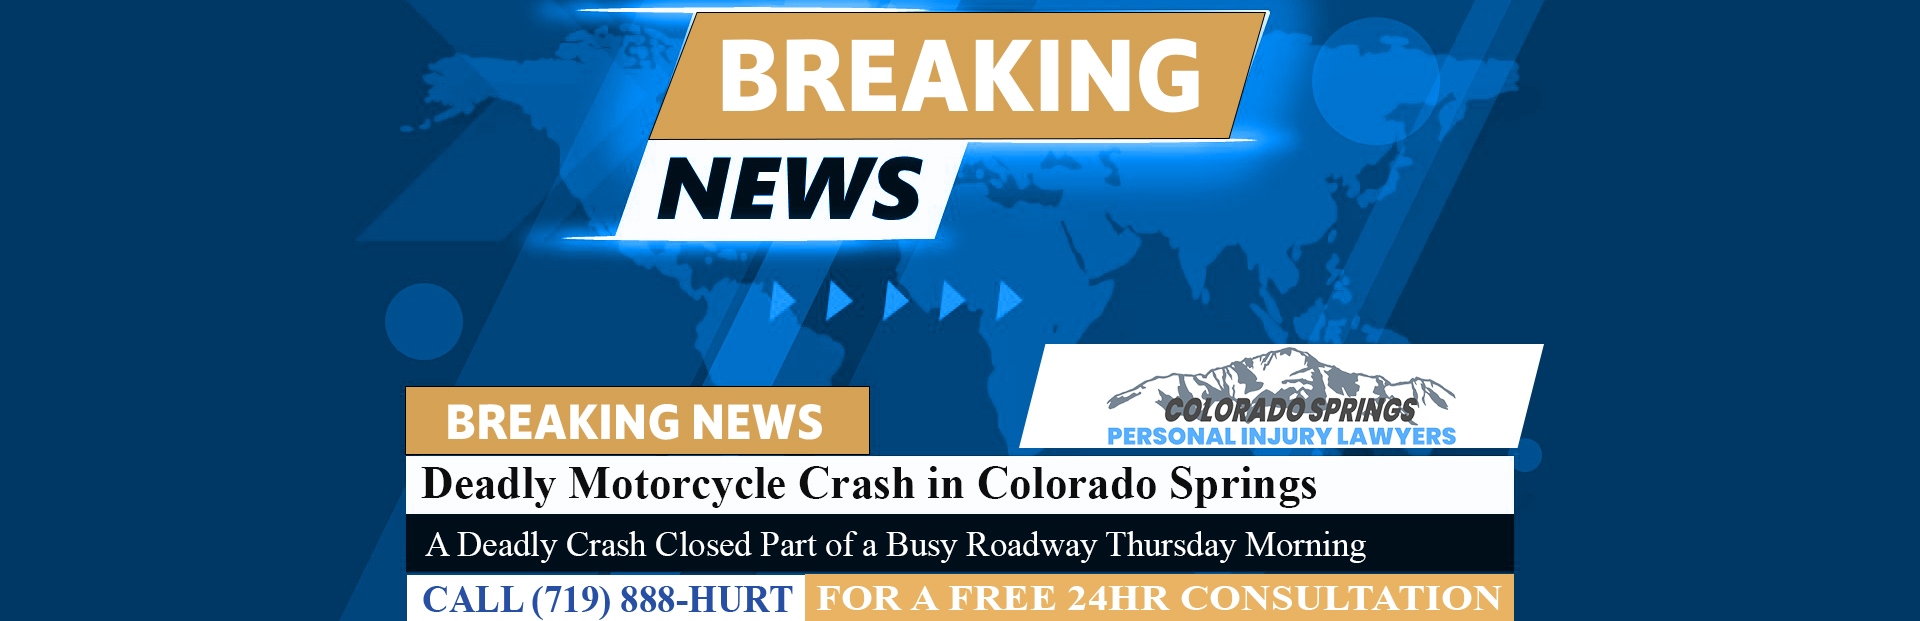 [10-08-23] Deadly Motorcycle Crash in Colorado Springs Along Woodmen Under Investigation